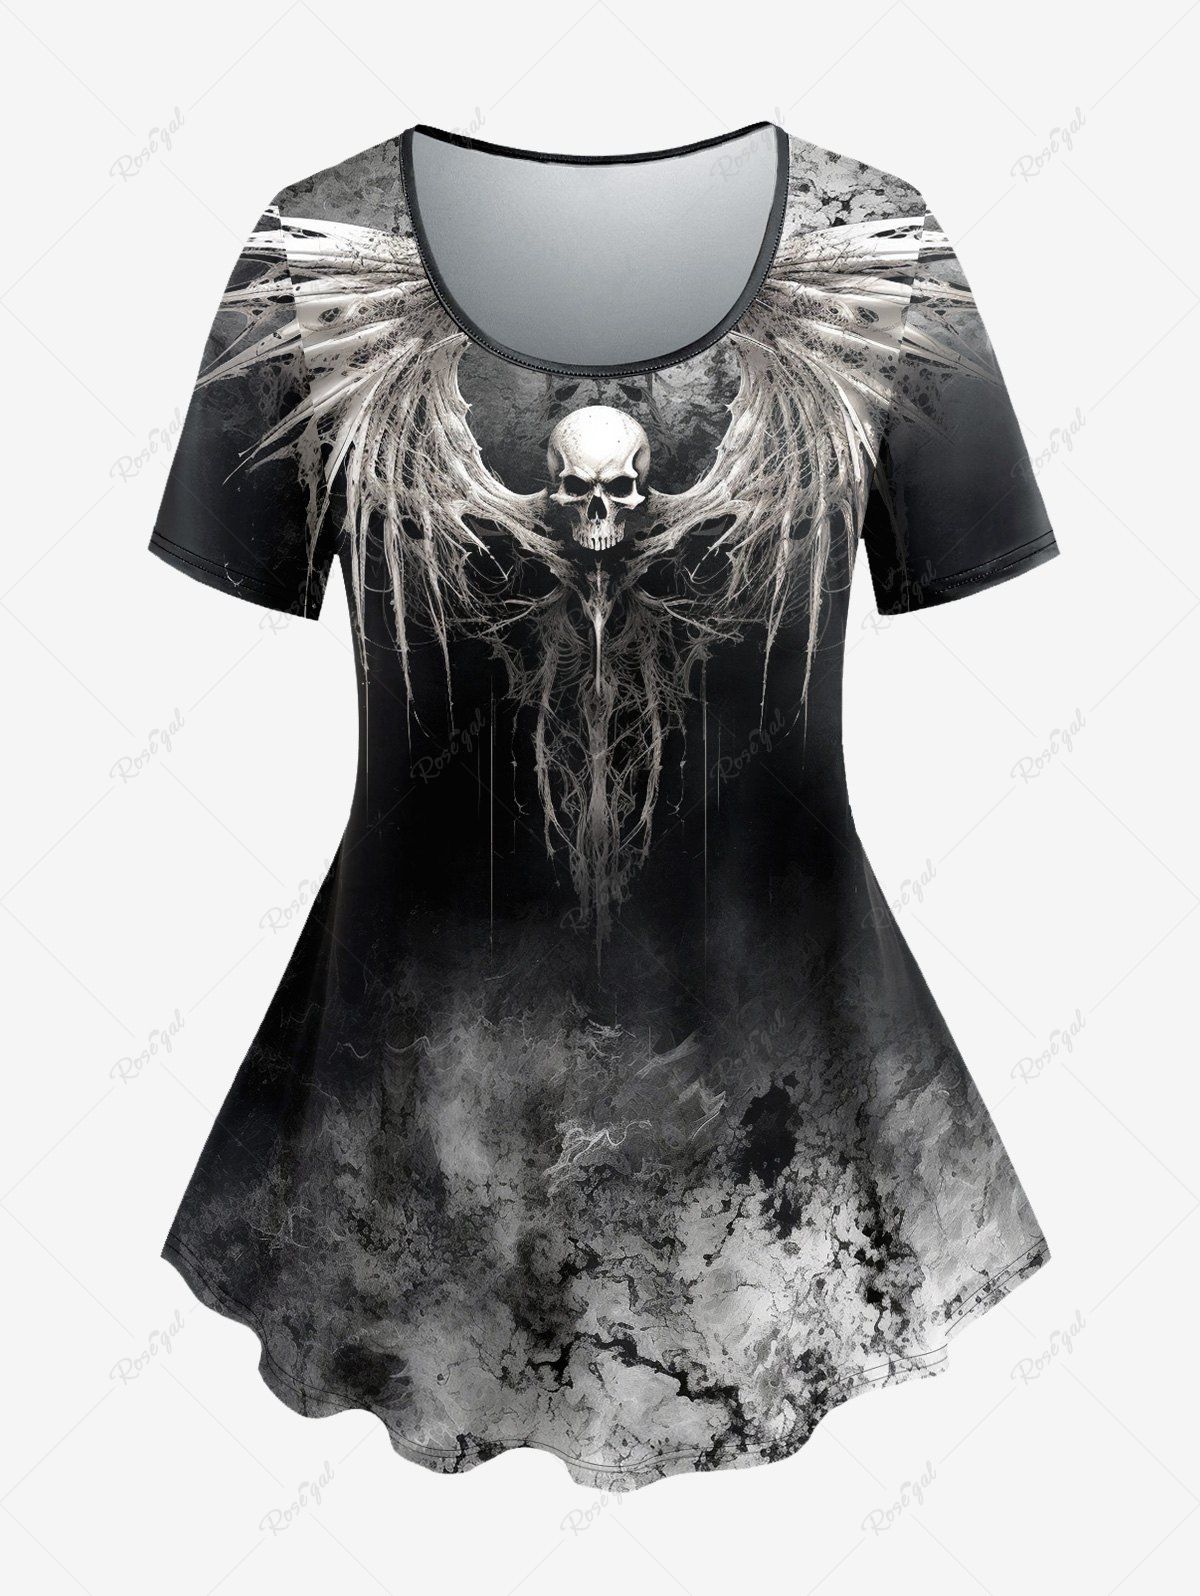 T-shirt D'Halloween Teinté Crâne Ombrée Style Gothique Noir 1X